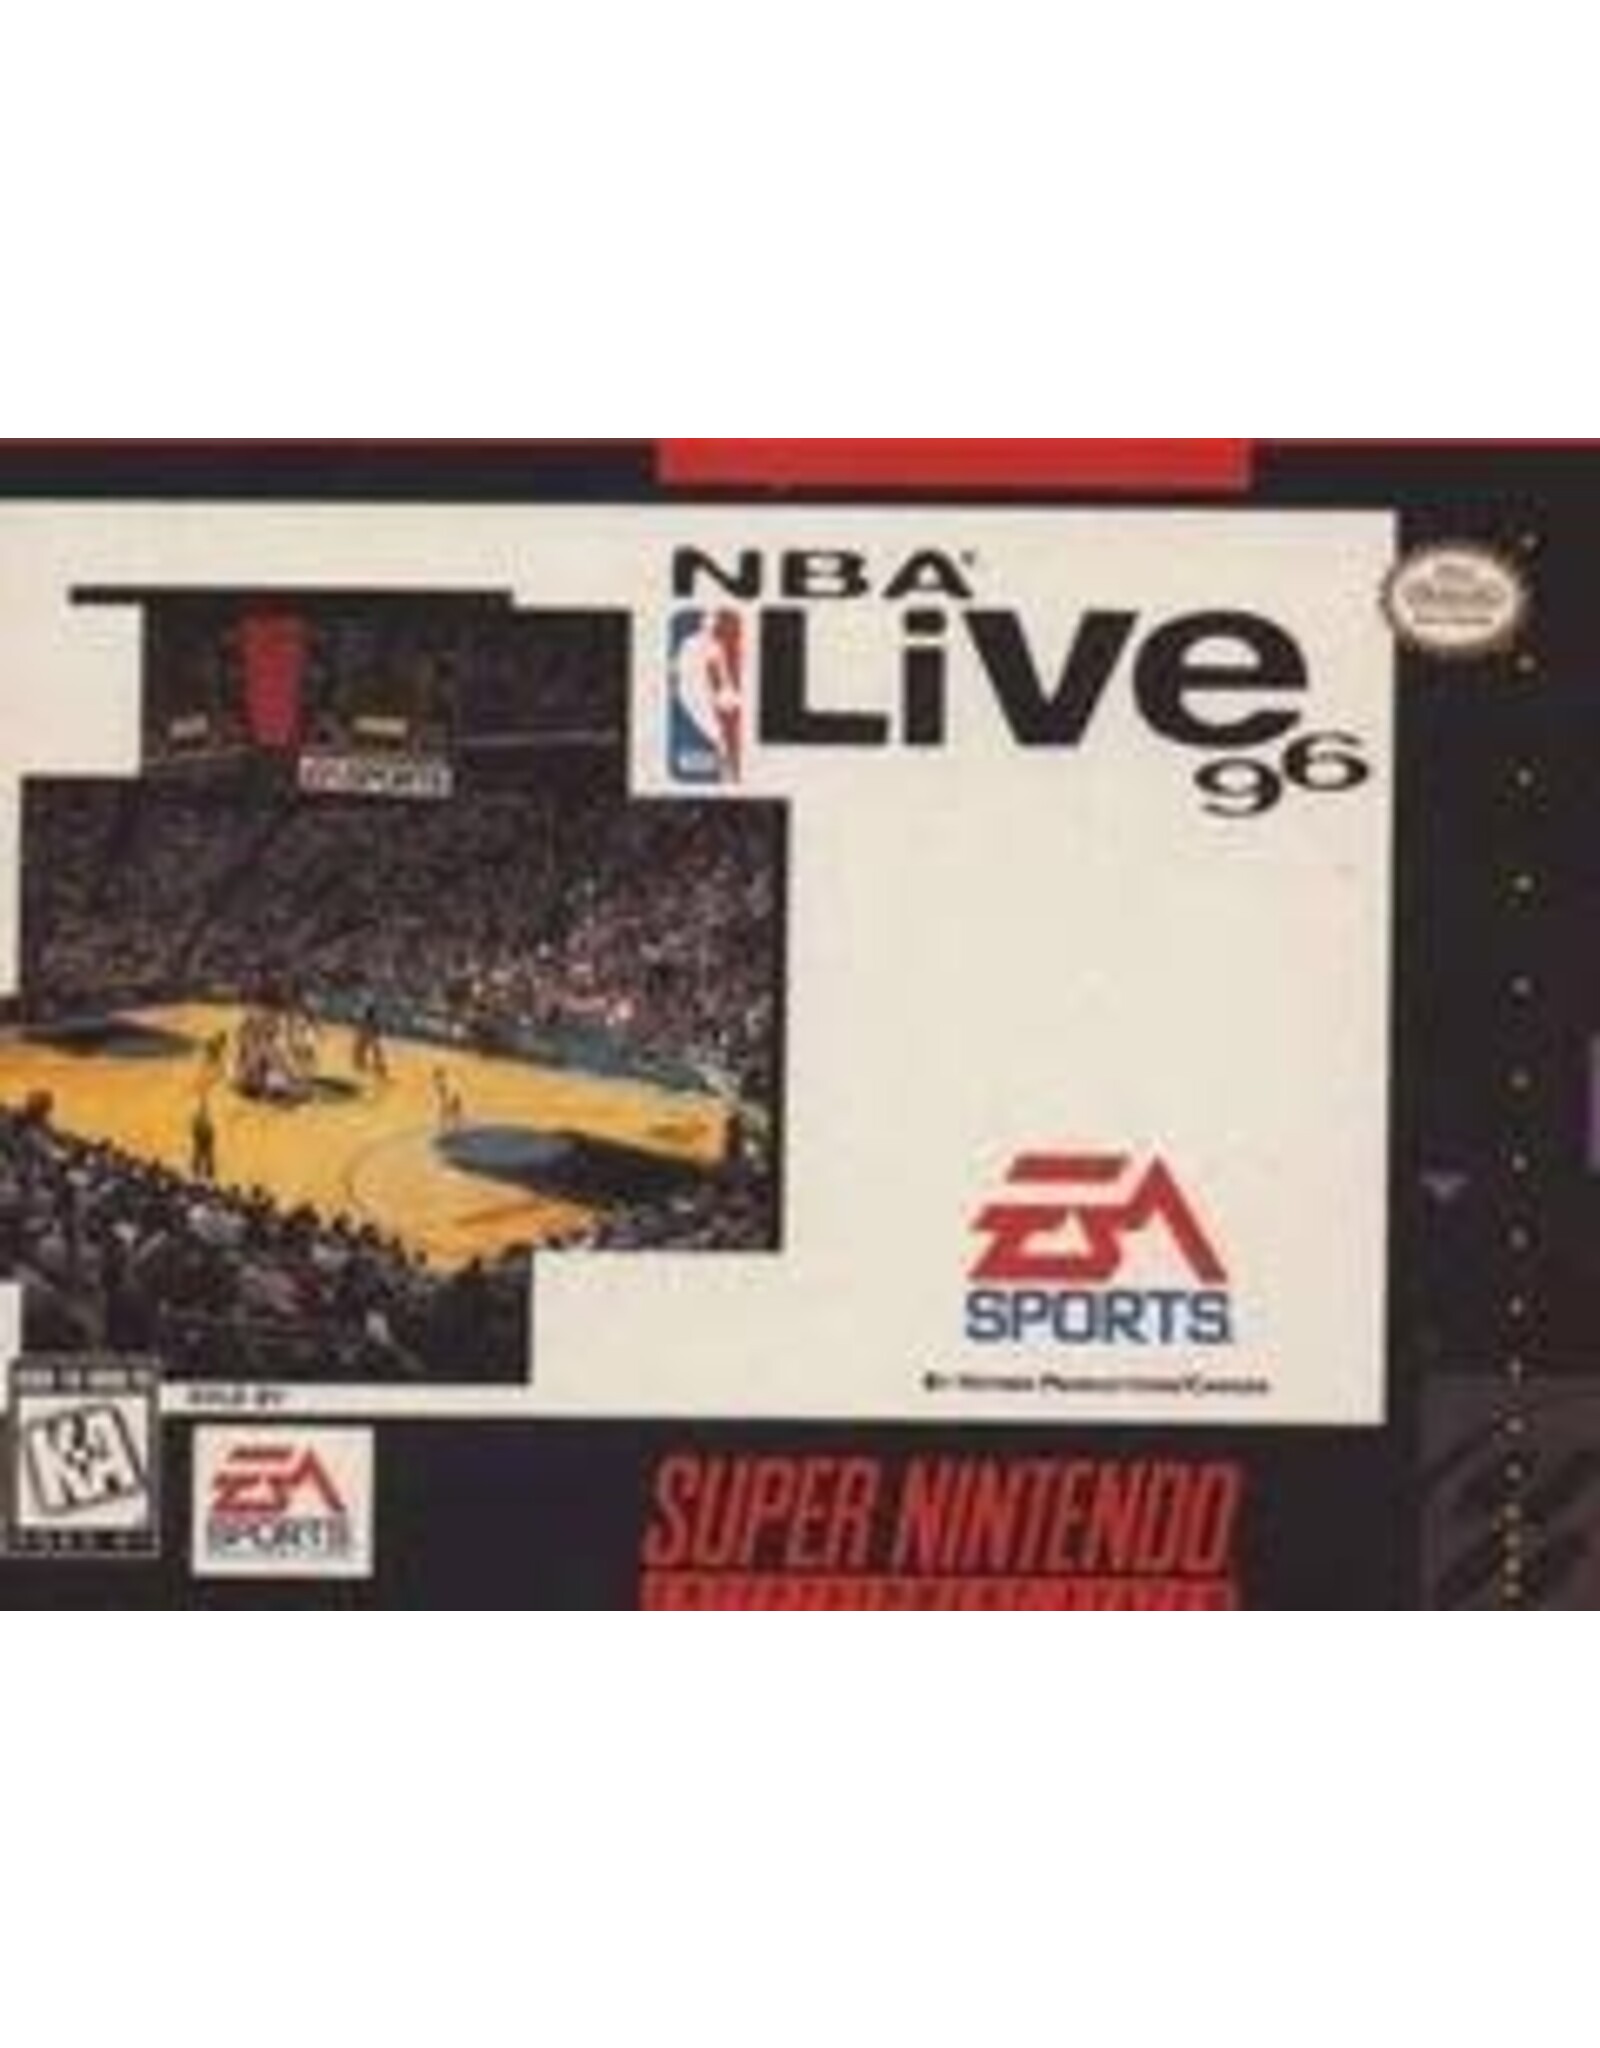 Super Nintendo NBA Live 96 (Cart Only, Damaged Back Label)